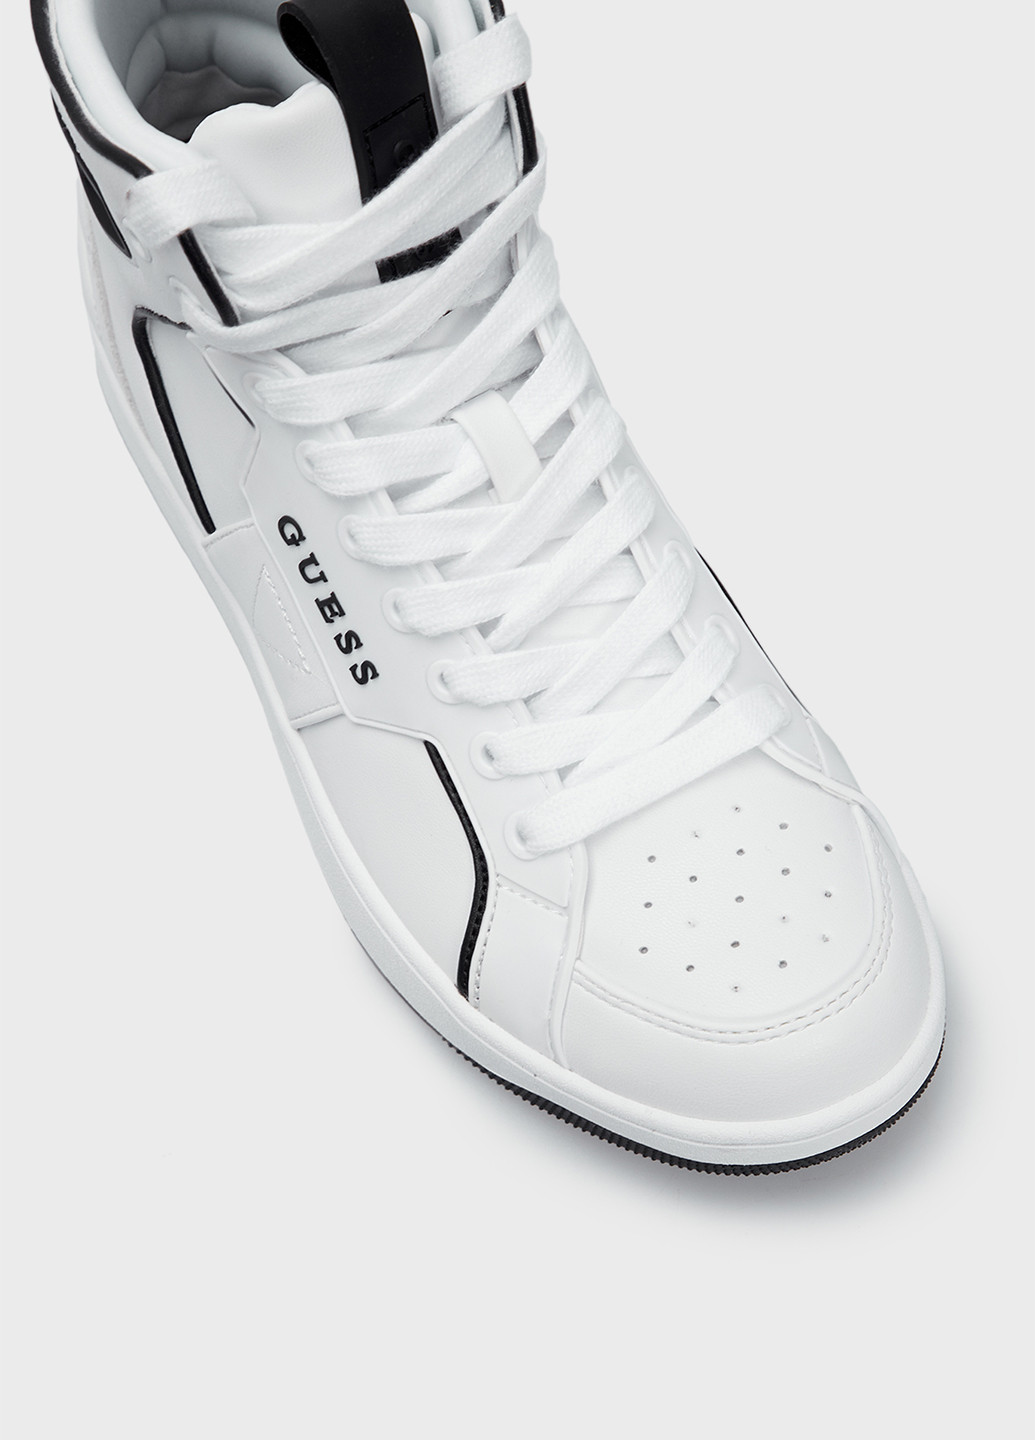 Осенние ботинки Guess с логотипом, с белой подошвой из искусственной кожи